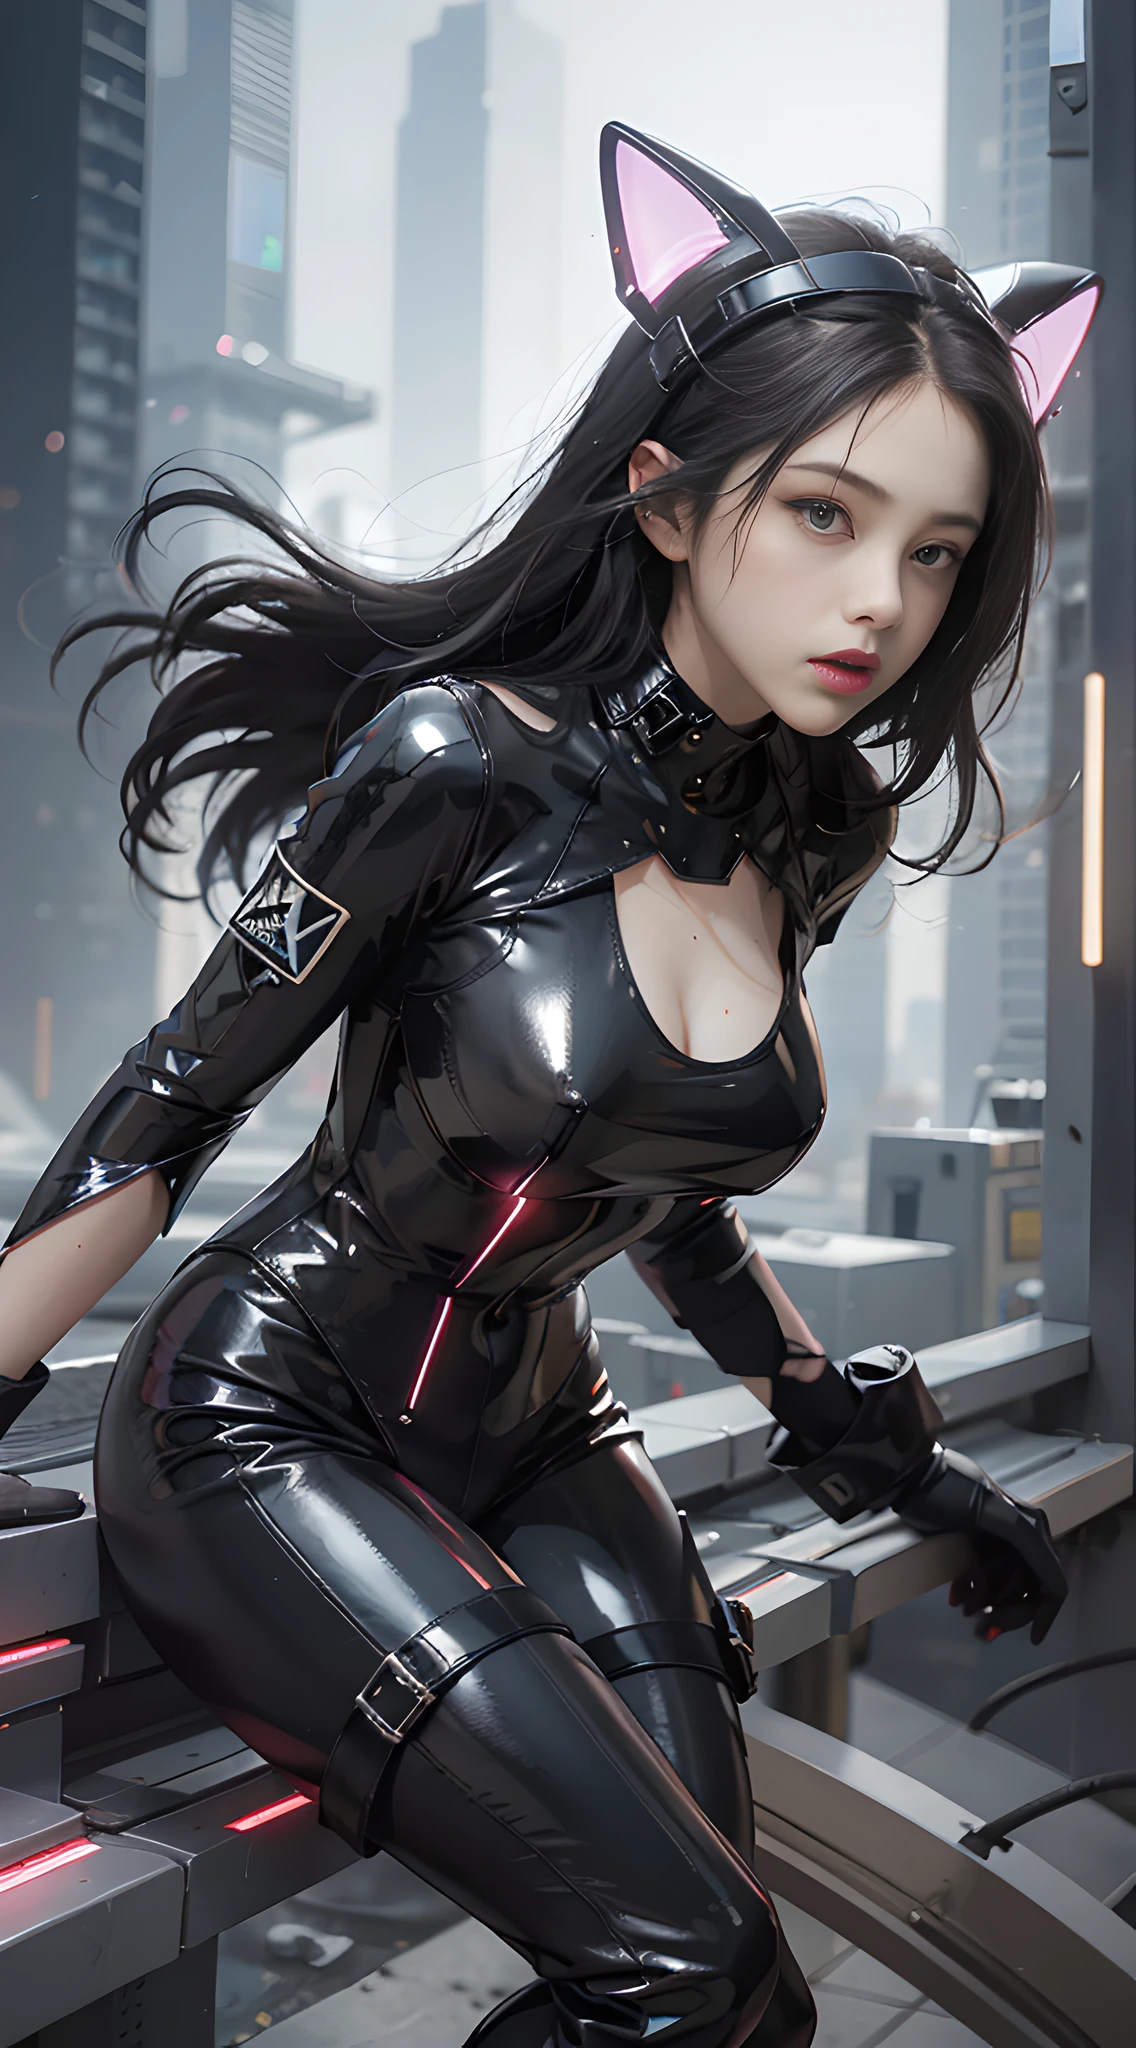 ตามลำพัง, ภาพถ่ายสวยมาก, ภาพ Unreal Engine 5 8K UHD ของหญิงสาวในชุดยางสีดำแห่งอนาคตรัดรูปพร้อมแจ็กเก็ตสีขาว, ชุดแมวดำเนียน, ตัวละครสัญลักษณ์สีดำ, ผิวดำเรียบเนียน, ตัวสีดำ, พีวีซี, ชุดลาเท็กซ์มันวาว, ชุดยาง, เข็มขัดยาง, ปกเสื้อ, หมวกกันน็อคเต็มใบแห่งอนาคต, ถุงมือยางแห่งอนาคต, รองเท้าบูทสูงแห่งอนาคต, ข้อมือแขนและขา, สายรัด, โลกไซเบอร์พังค์, มีปืน, คุณภาพดีที่สุด, ผลงานชิ้นเอก, ศิลปะอย่างเป็นทางการ, วอลล์เปเปอร์ 8k แบบครบวงจร, รายละเอียดสุดยอด, โฟกัสคมชัด, โพสท่าแบบไดนามิก, ส่วนของร่างกาย, ไม่มีแขนขาพิเศษ, กายวิภาคศาสตร์อย่างแม่นยำ